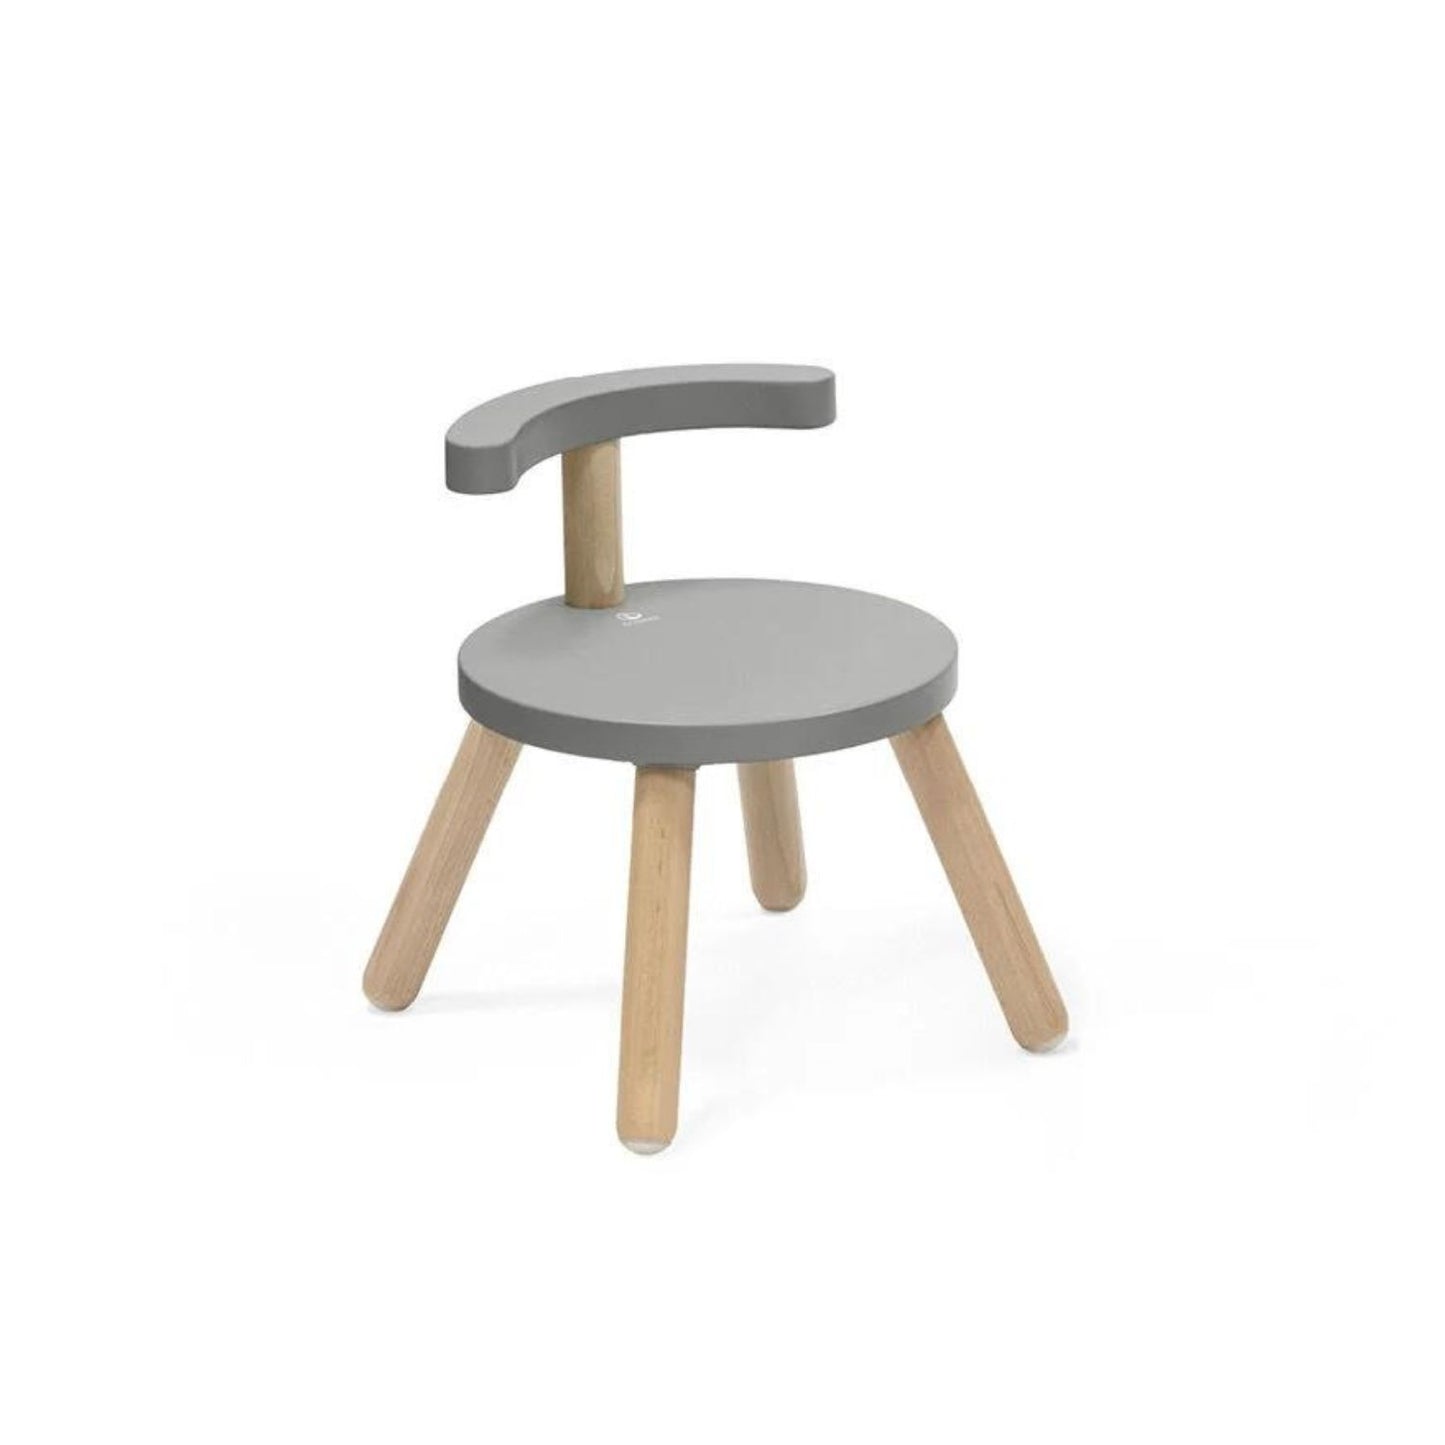 Stokke - MuTable V2 chair